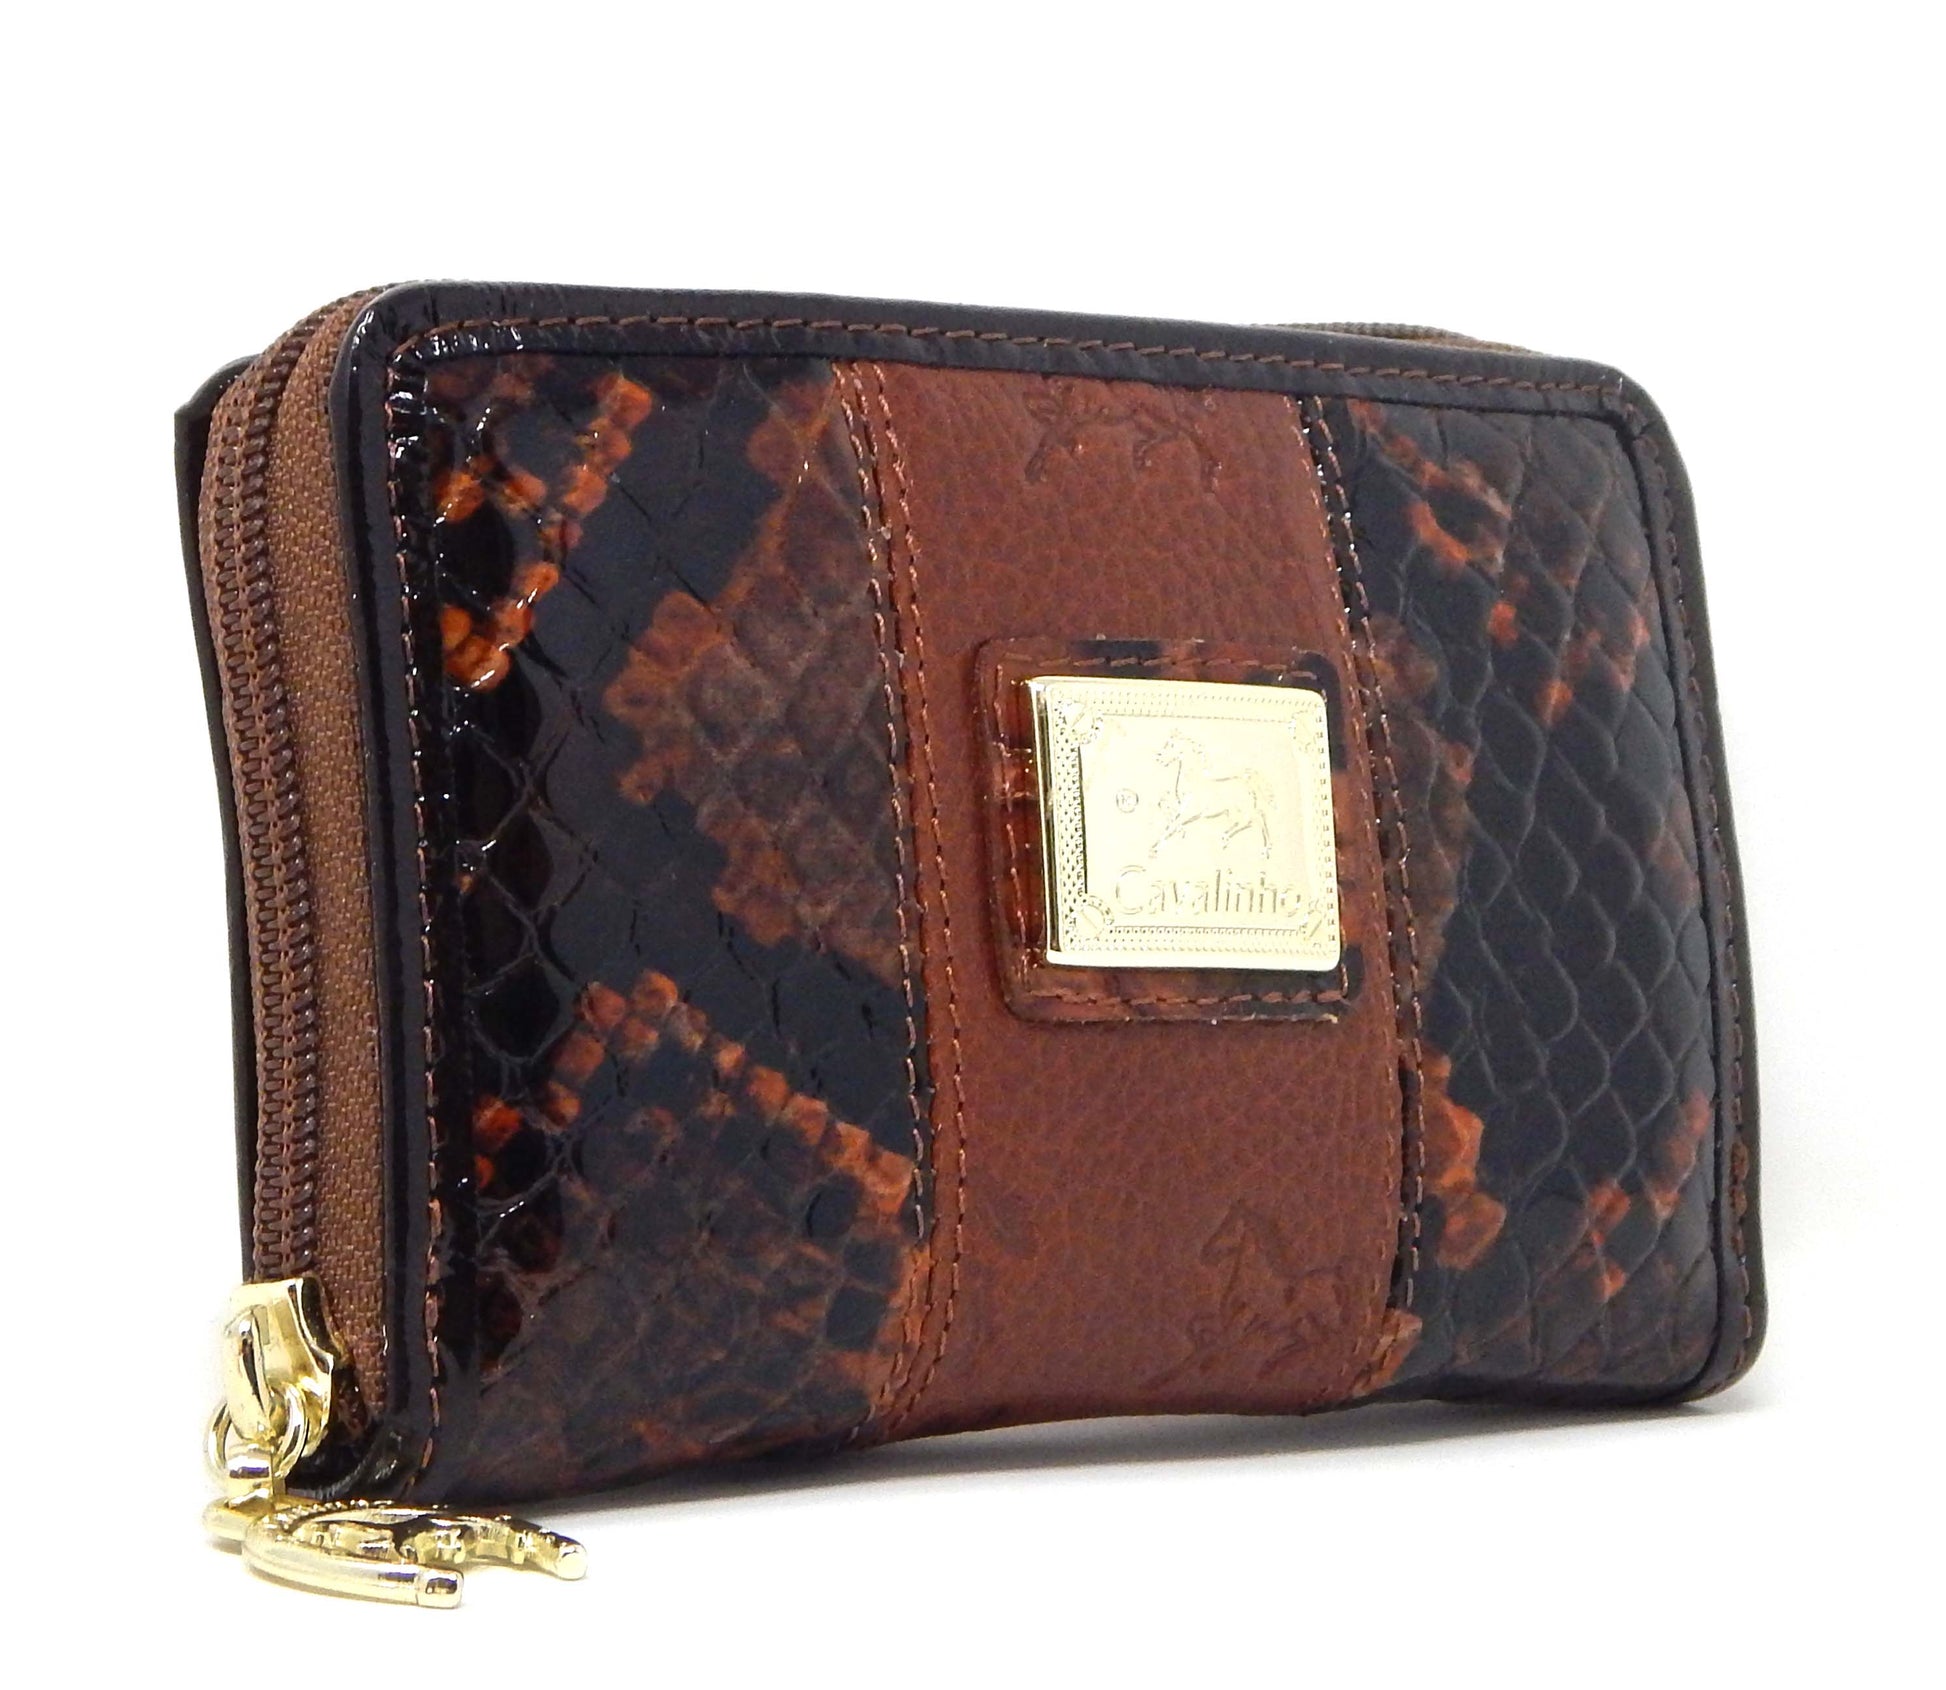 Cavalinho Honor Leather Card Holder Wallet - SaddleBrown - 28190217.13.99_2